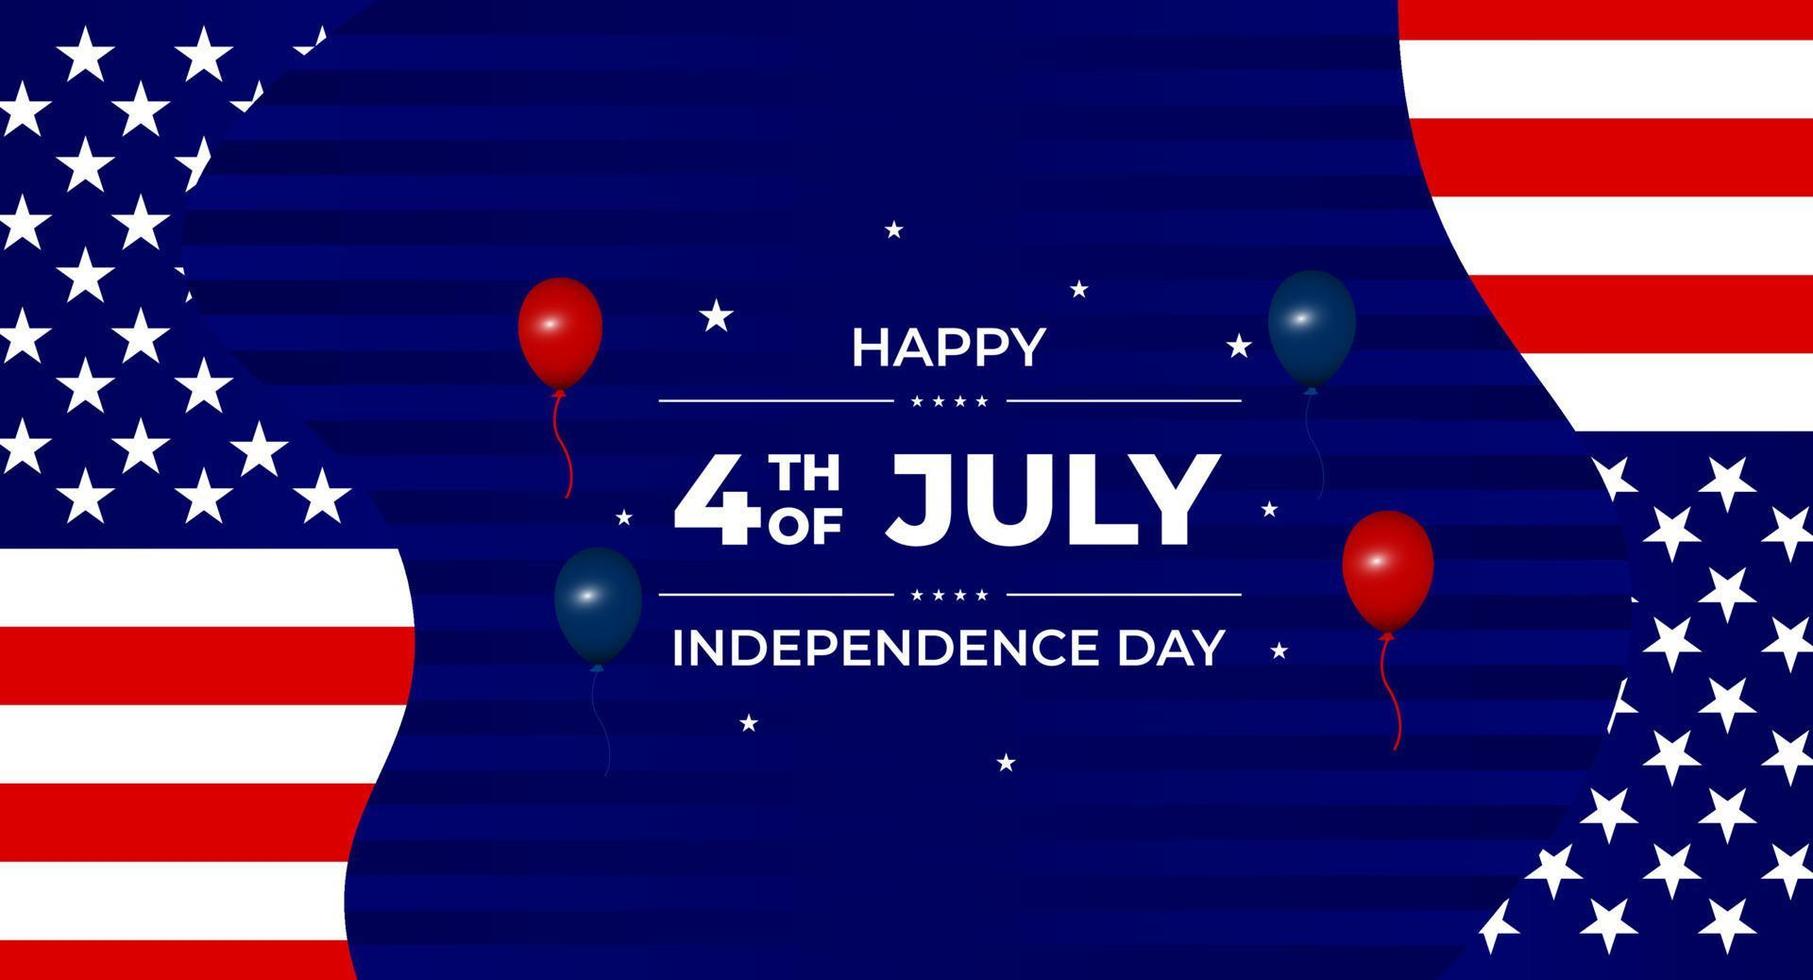 sfondo del giorno dell'indipendenza degli Stati Uniti con elementi della bandiera americana. 4 luglio. sfondo di celebrazione del giorno dell'indipendenza degli Stati Uniti. vettore